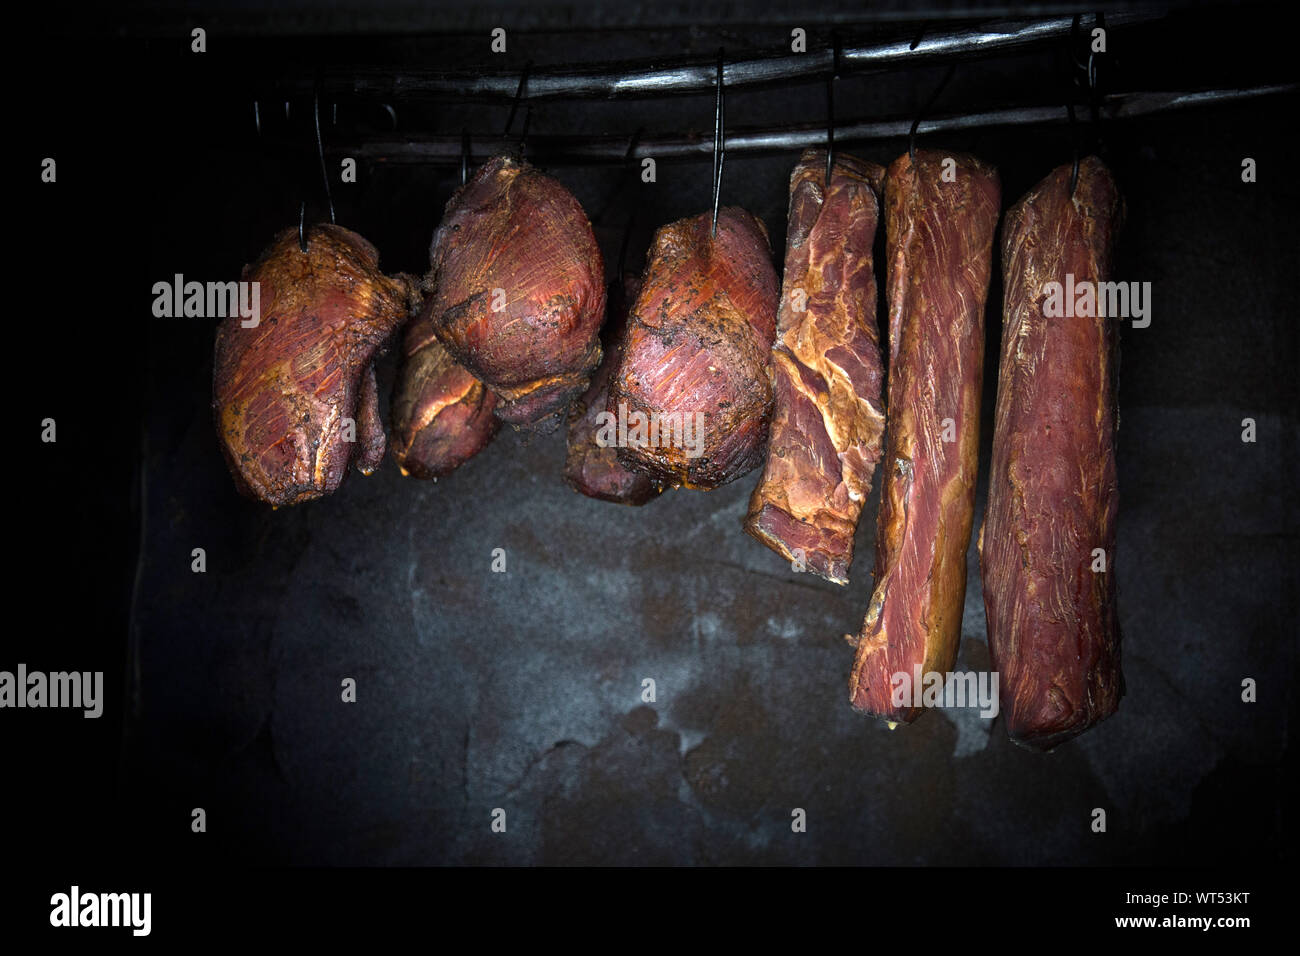 La viande de porc fumé fumé sur fond sombre. Banque D'Images